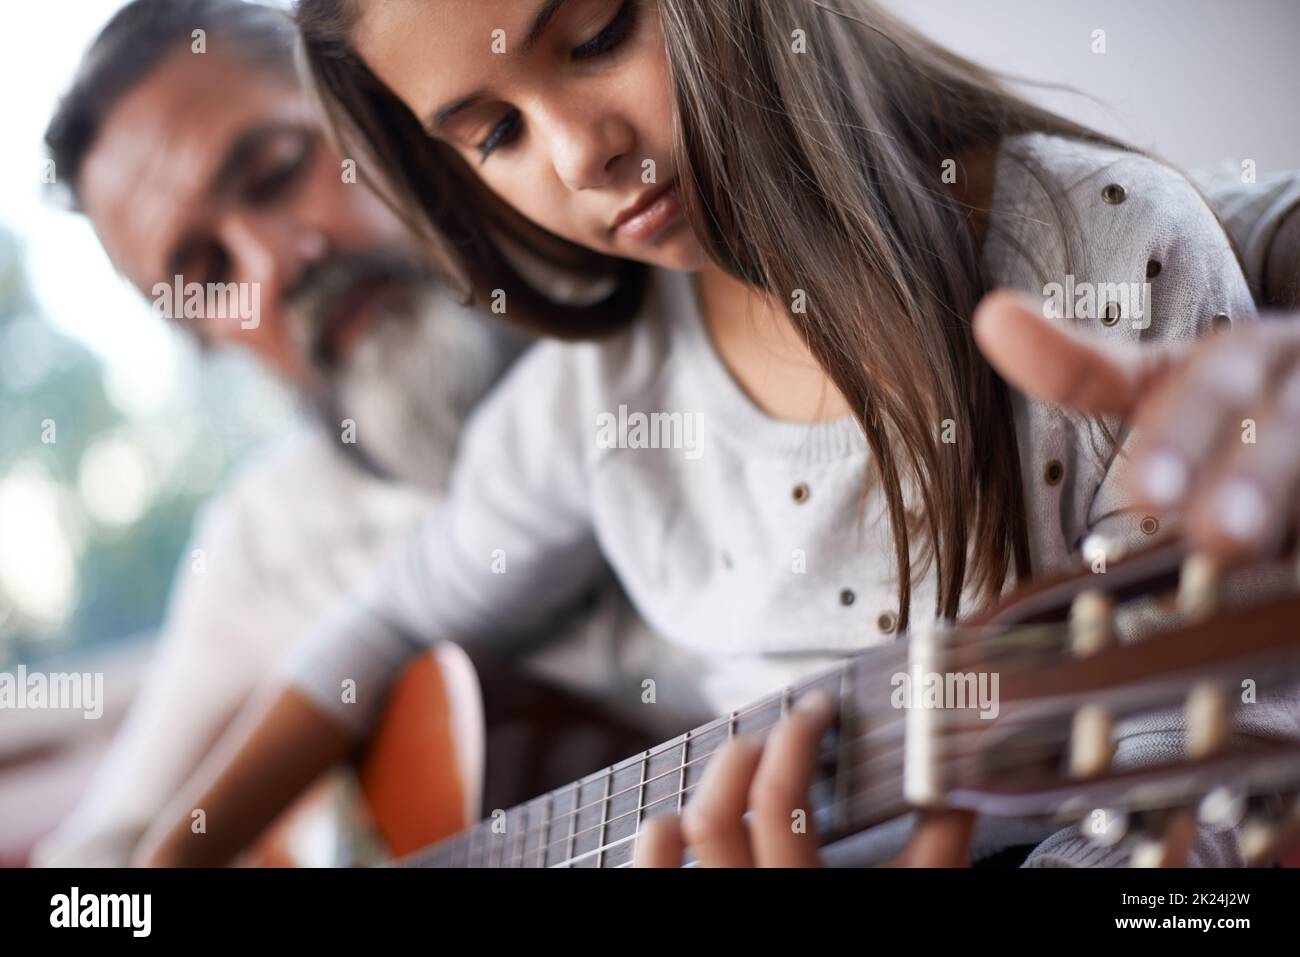 Granddad può darti alcuni consigli. Una bambina che suona la chitarra con suo nonno. Foto Stock